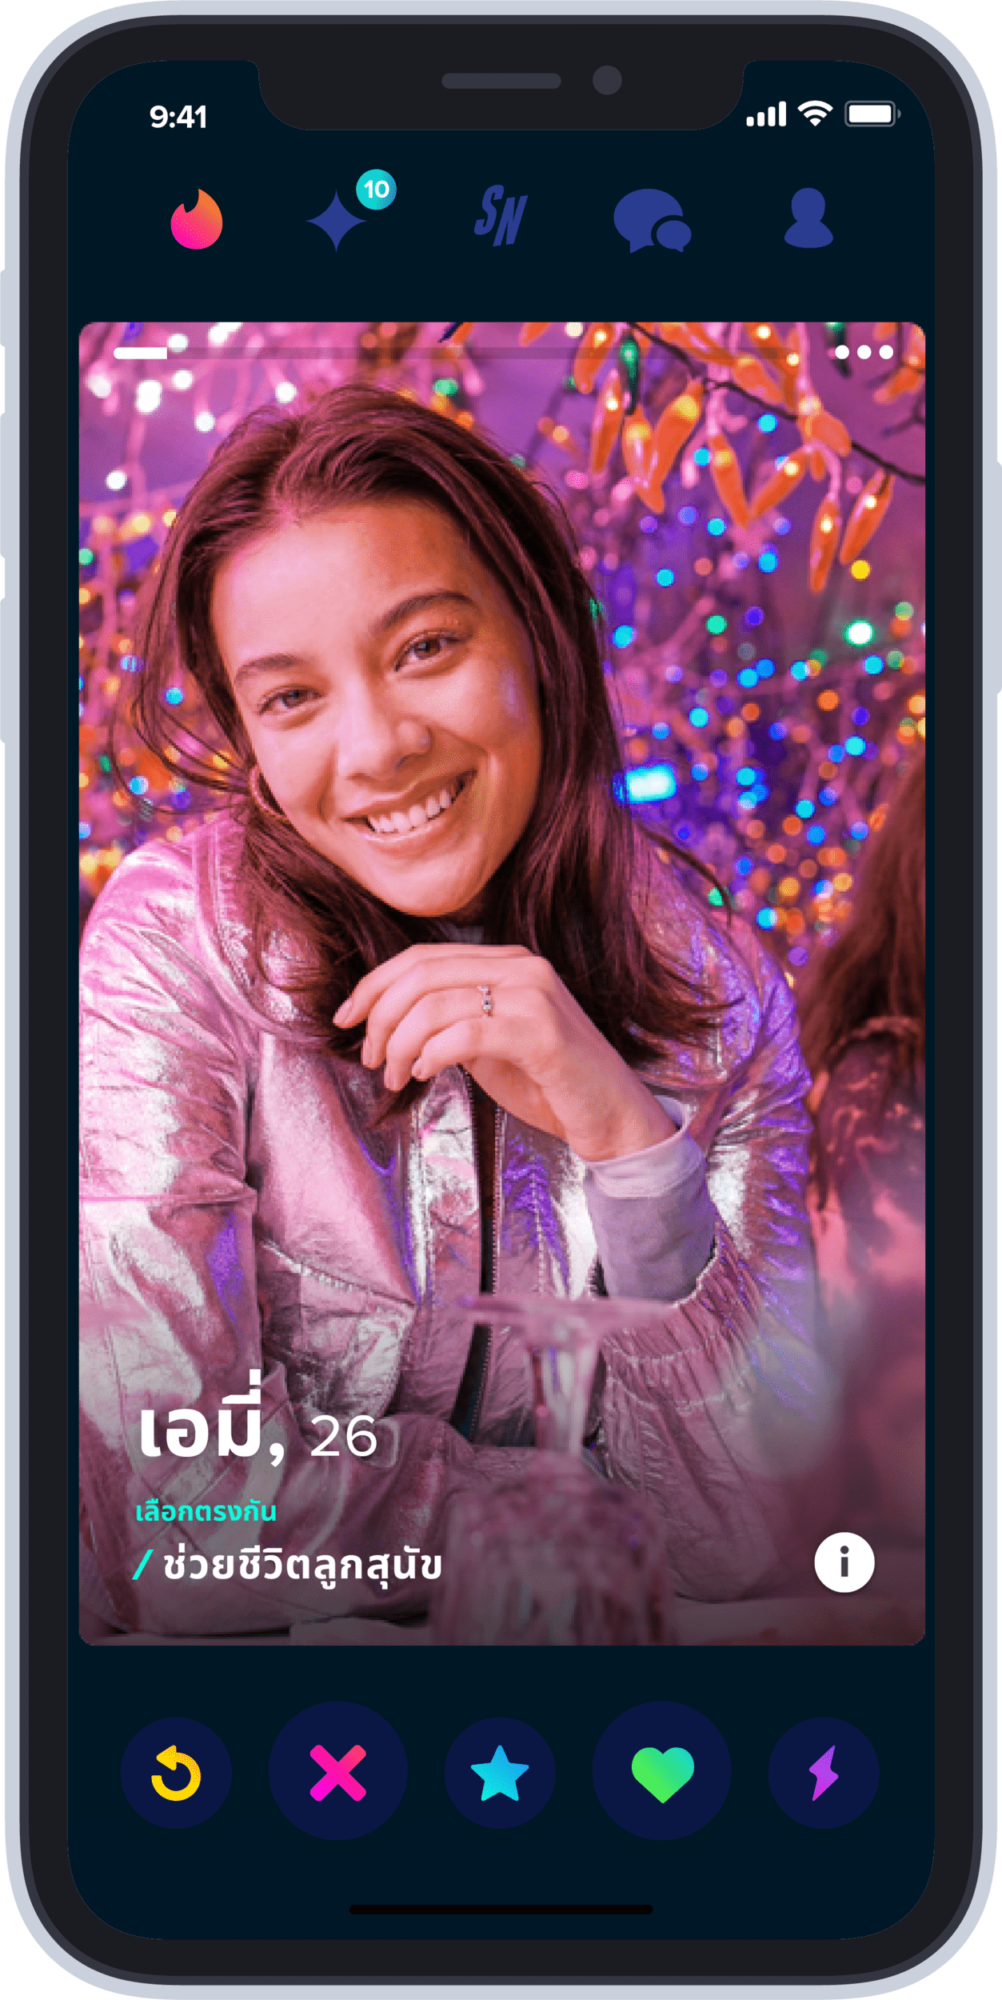 Tinder เปิดตัว ‘Swipe Night’ กิจกรรมอินเตอร์แอคทีฟสุดตื่นเต้นในเมืองไทย 3